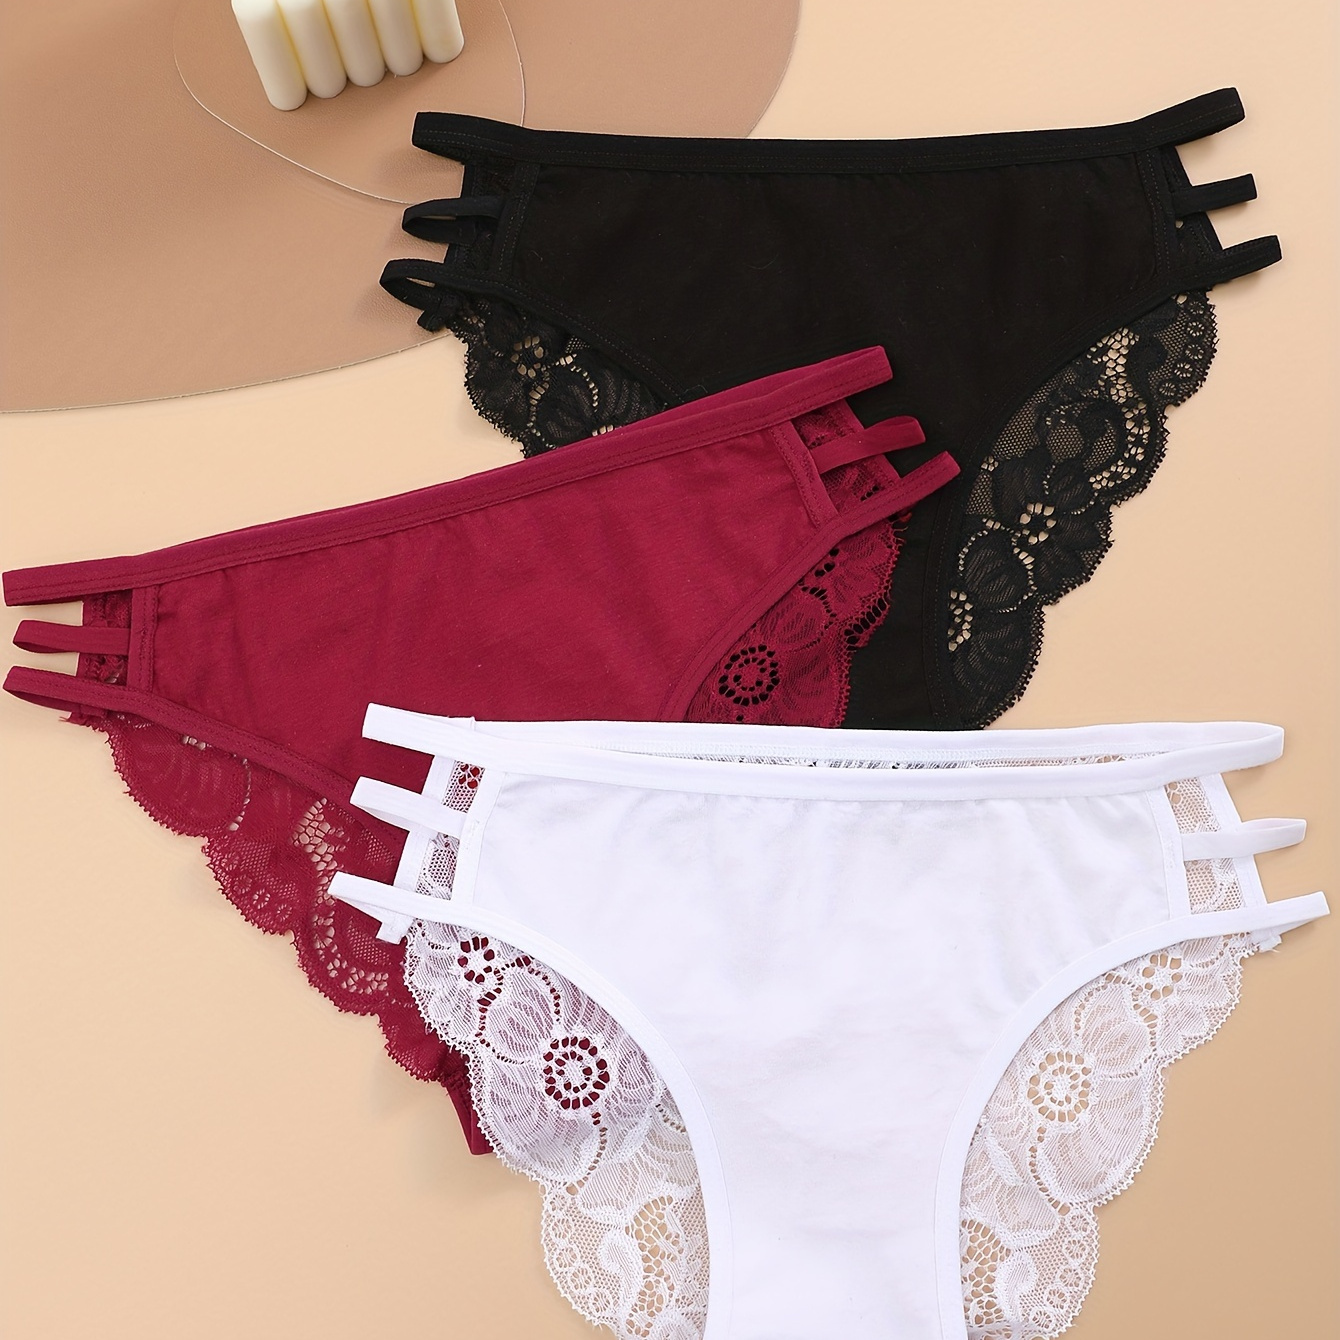 

3pcs Low Waist Lace Briefs, Soft & Comfy Cut-out Intimate Panties, Women's Underwear & Lingerie